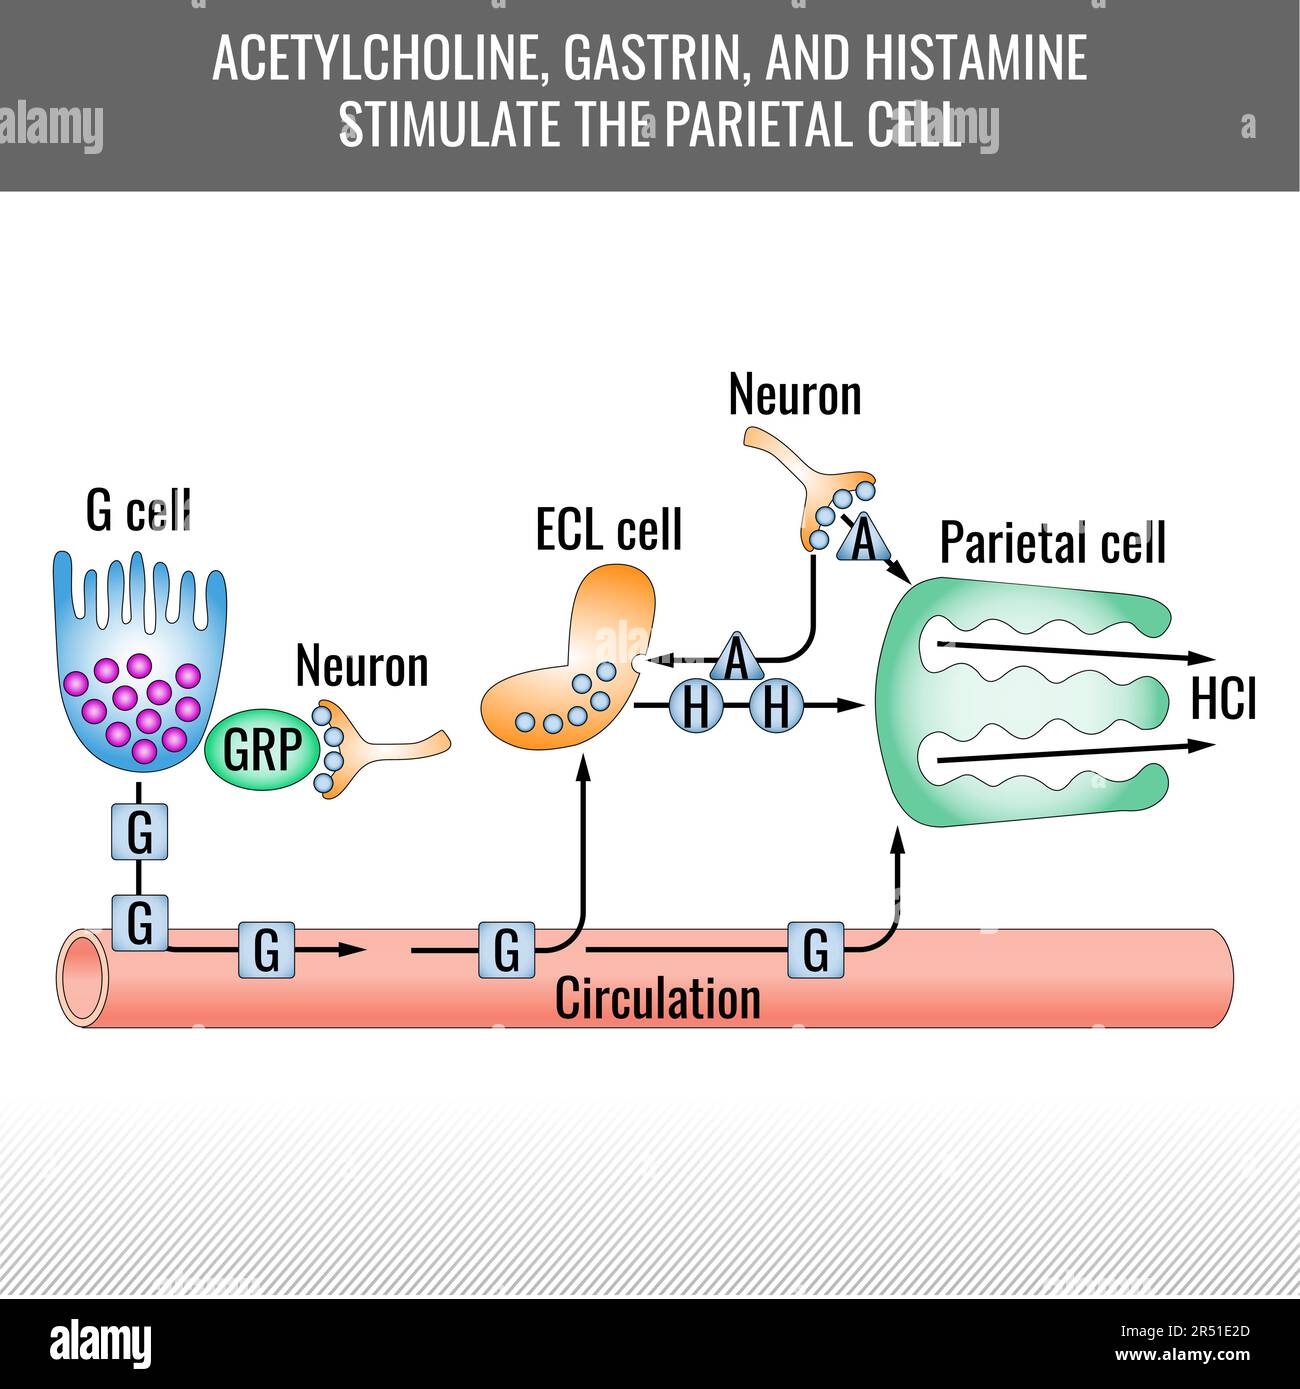 Stimulationsdiagramm der Parietalzellen. Acetylcholin, Gastrin und Histamin stimulieren die Parietalzelle. Salzsäurebildung. Vector Medical illus Stock Vektor